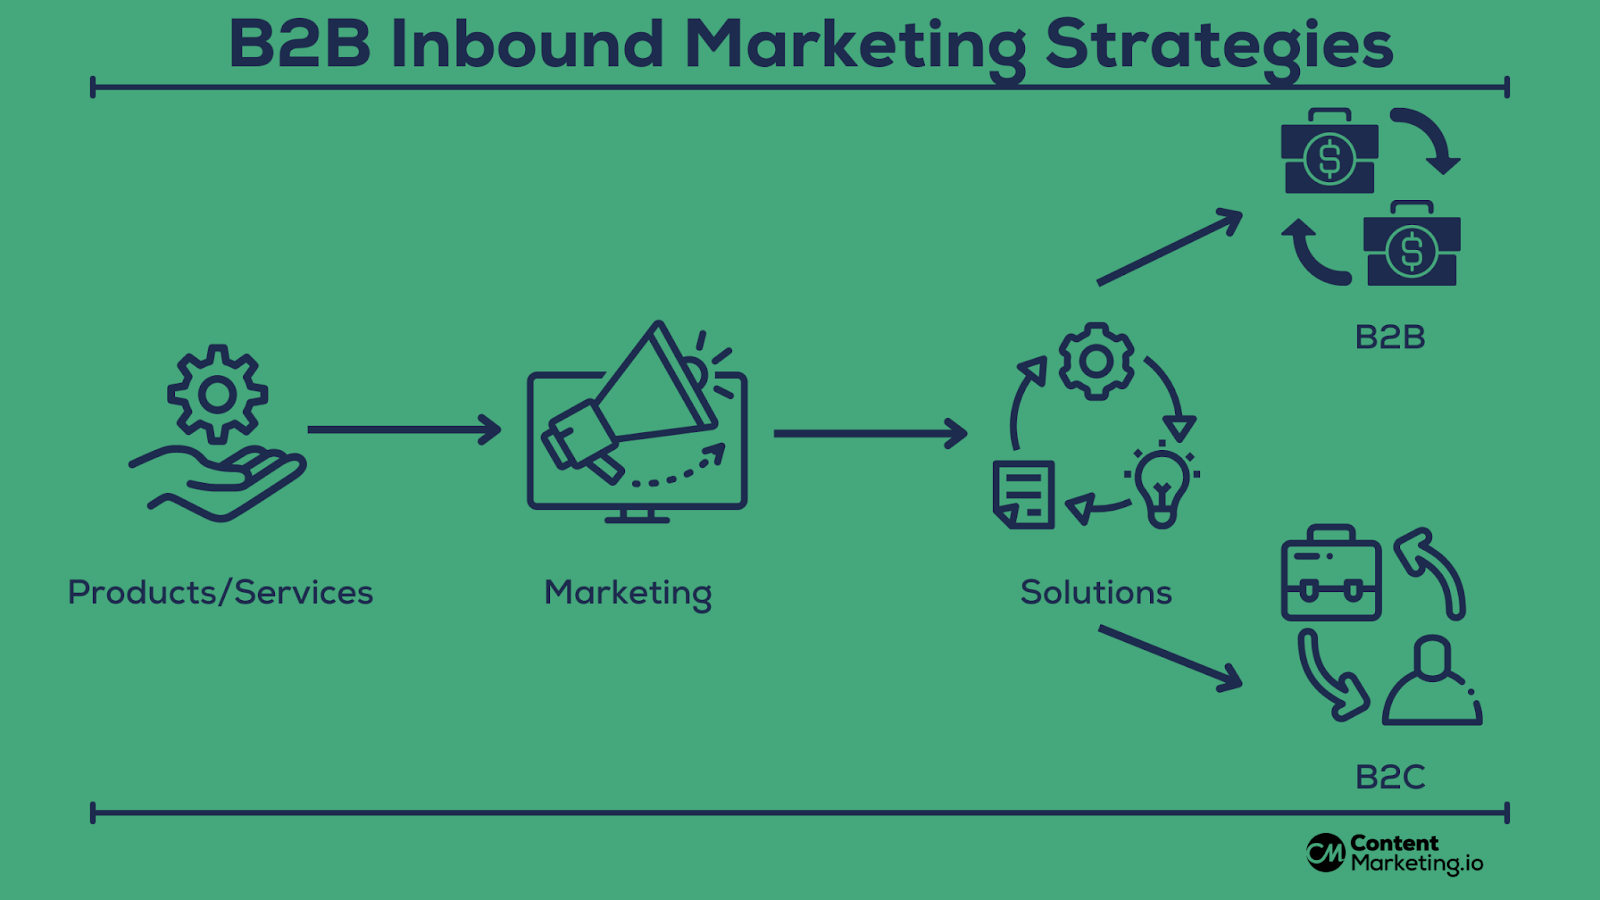 B2B Inbound Marketing Strategies